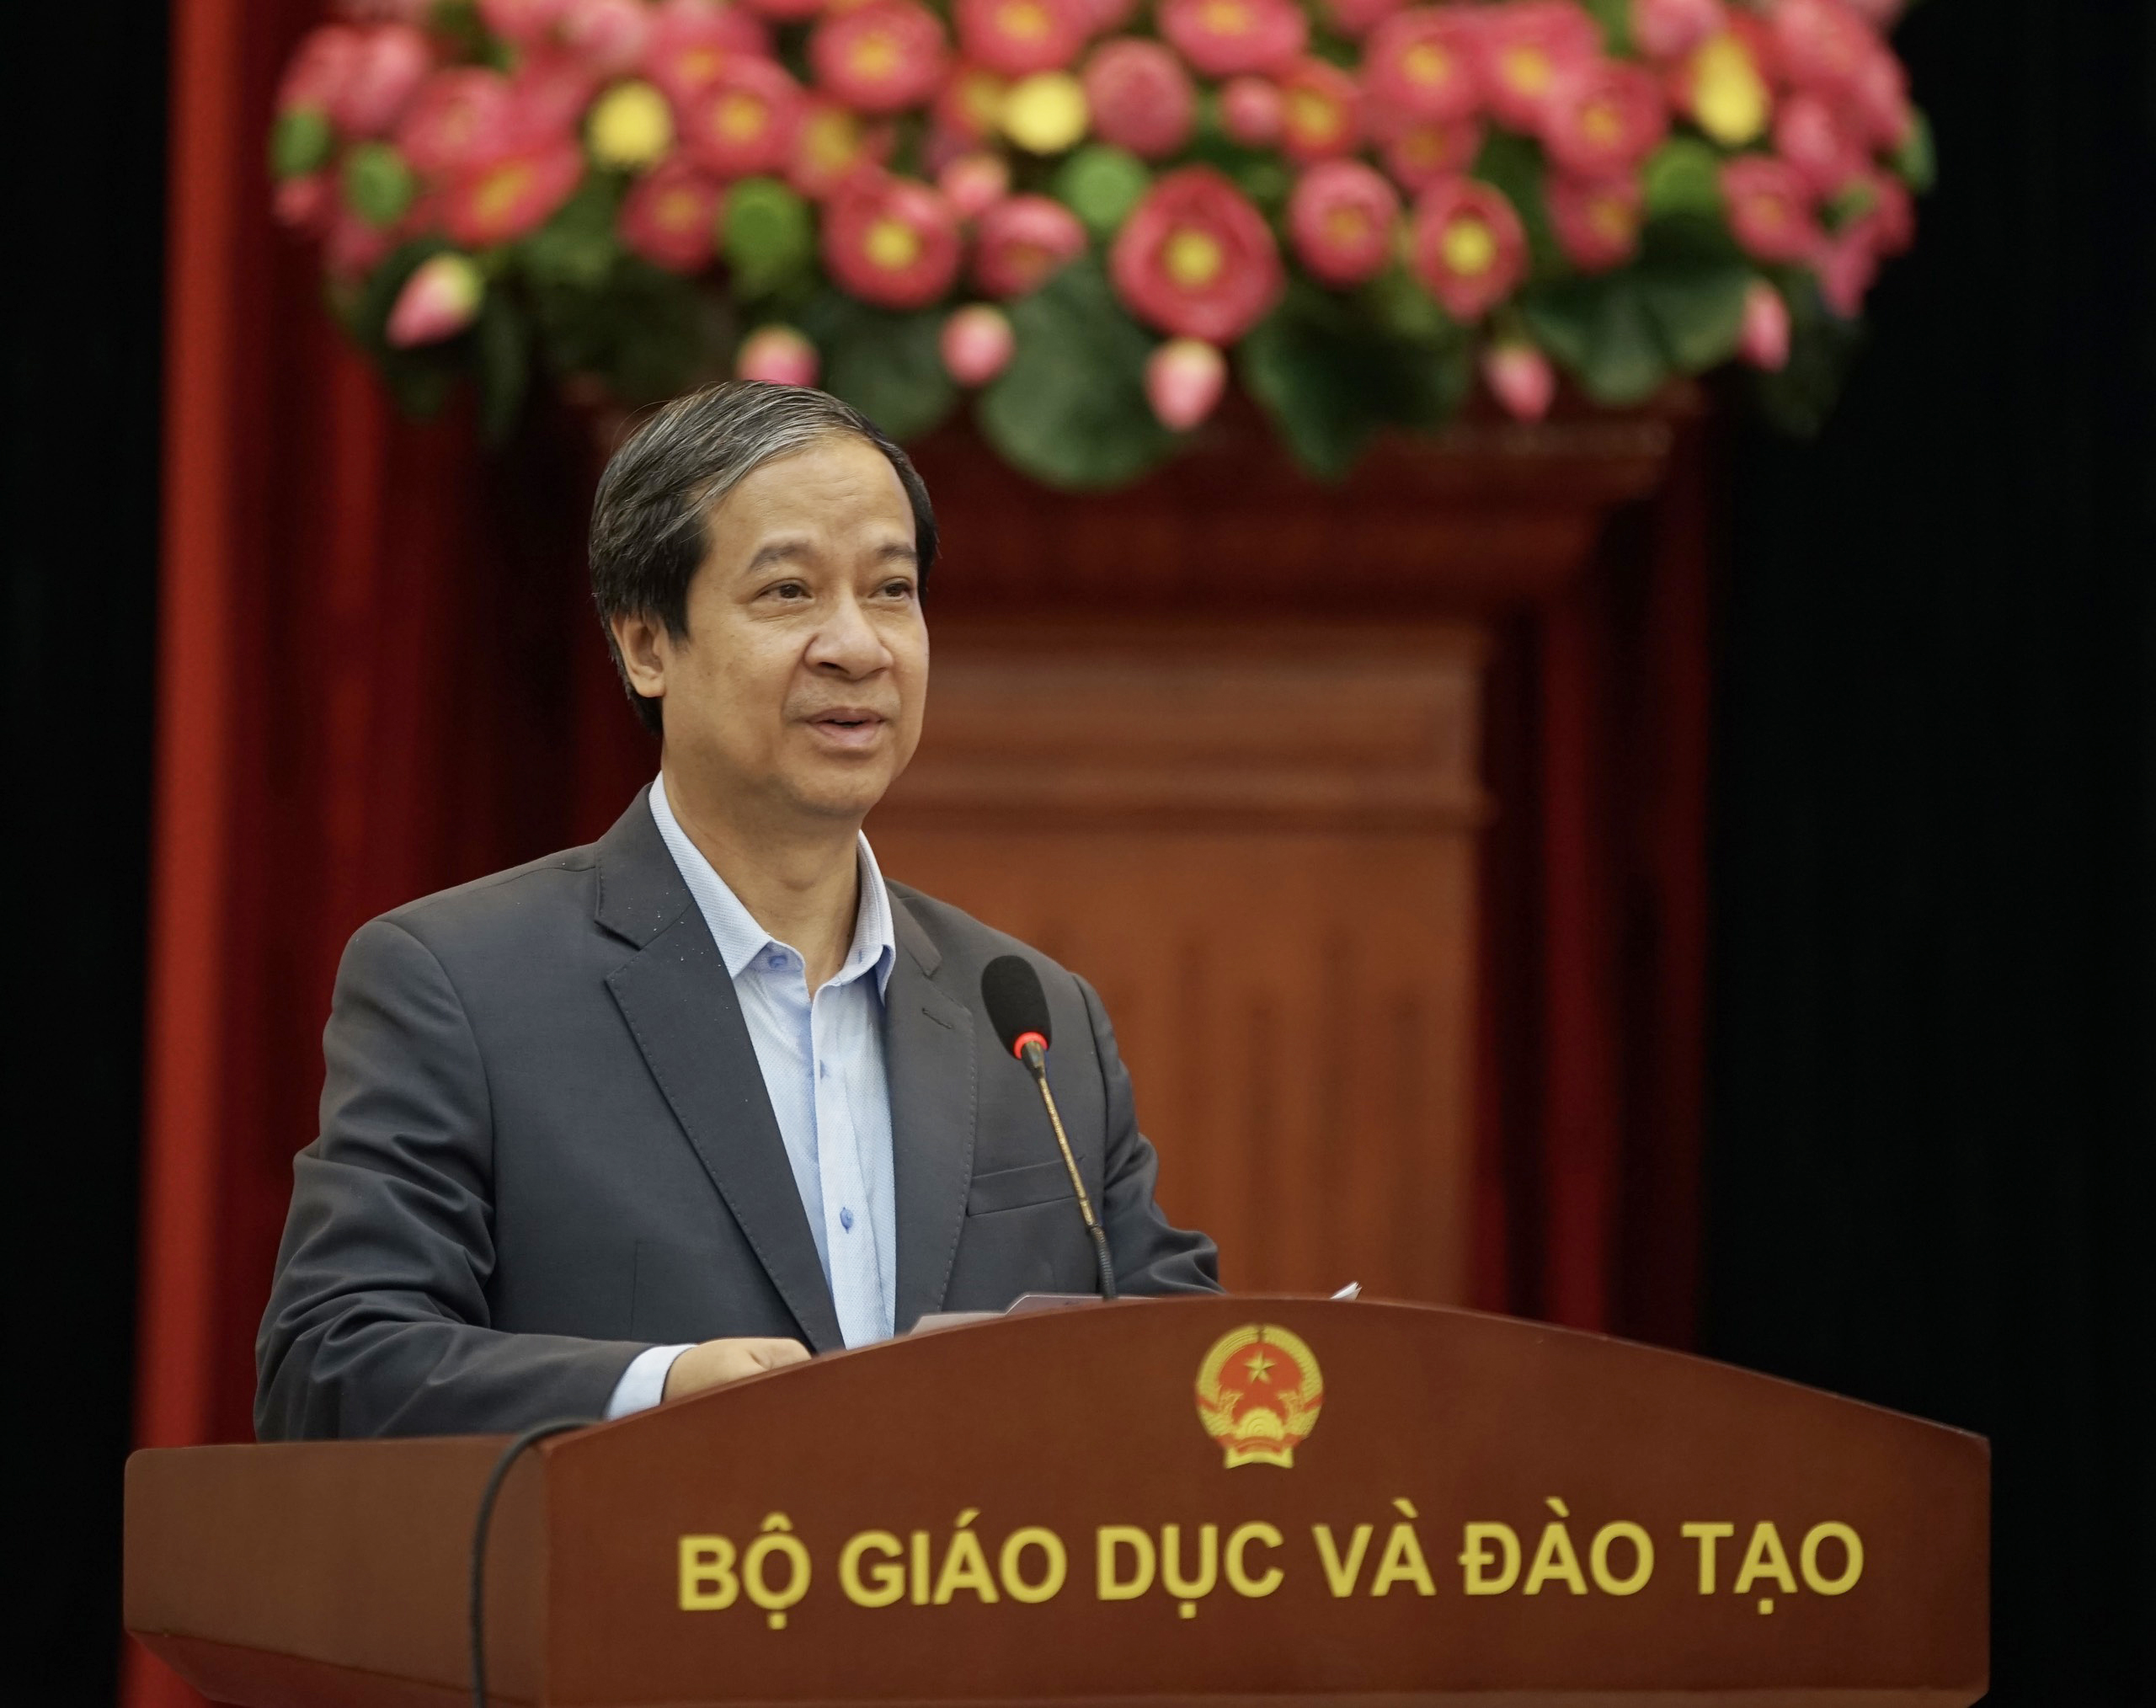 Bộ trưởng Bộ GD&ĐT Nguyễn Kim Sơn phát biểu tại Hội nghị.